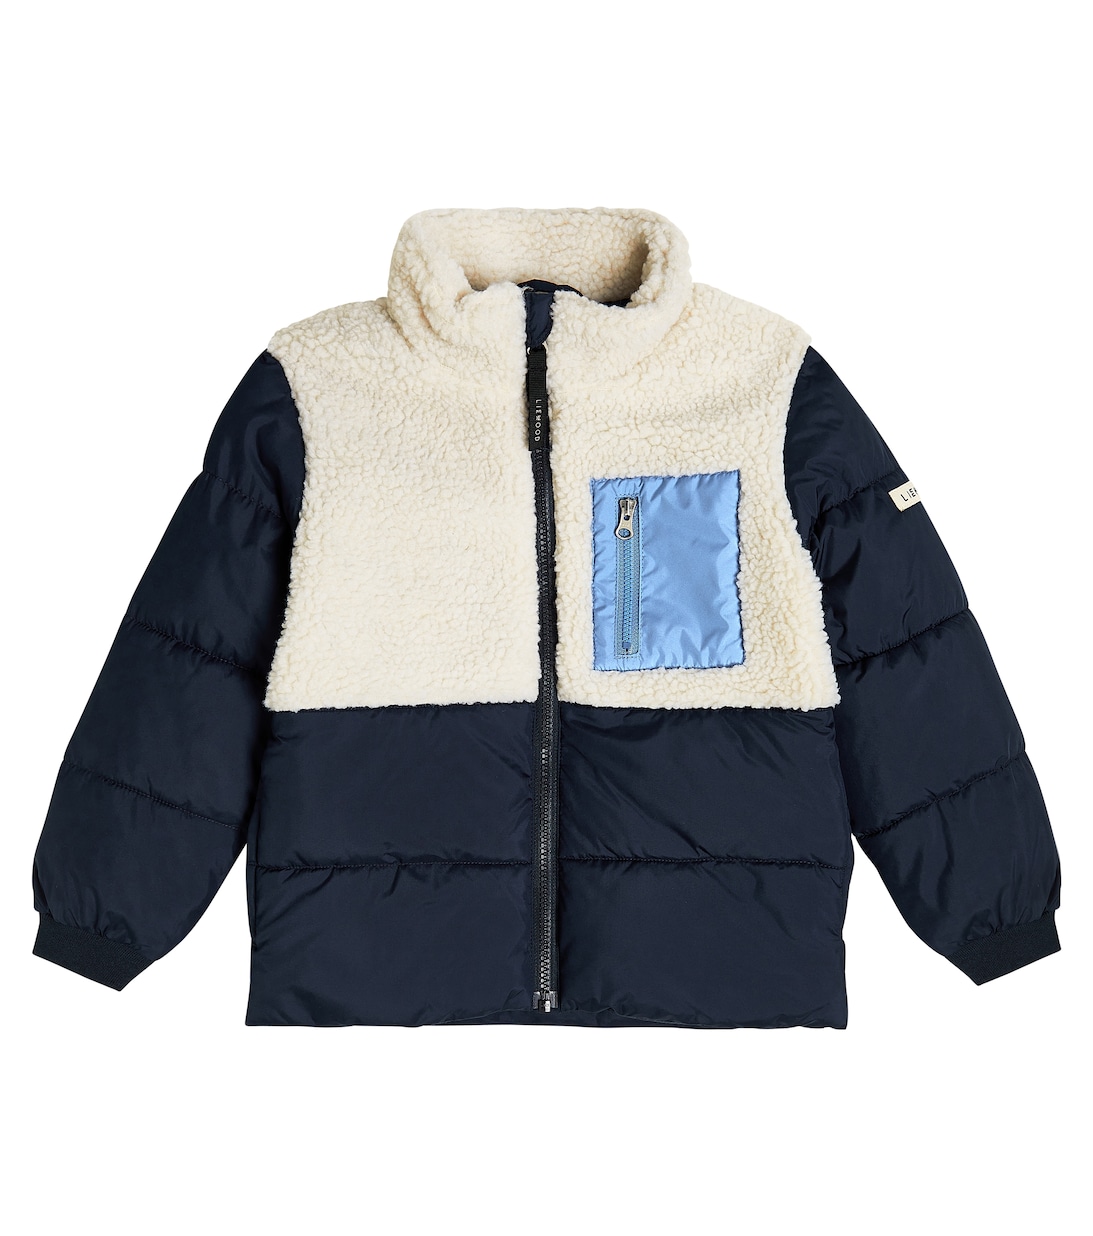 Куртка My Jacket с отделкой из искусственной овчины Liewood, синий куртка inge из искусственной овчины с капюшоном liewood коричневый